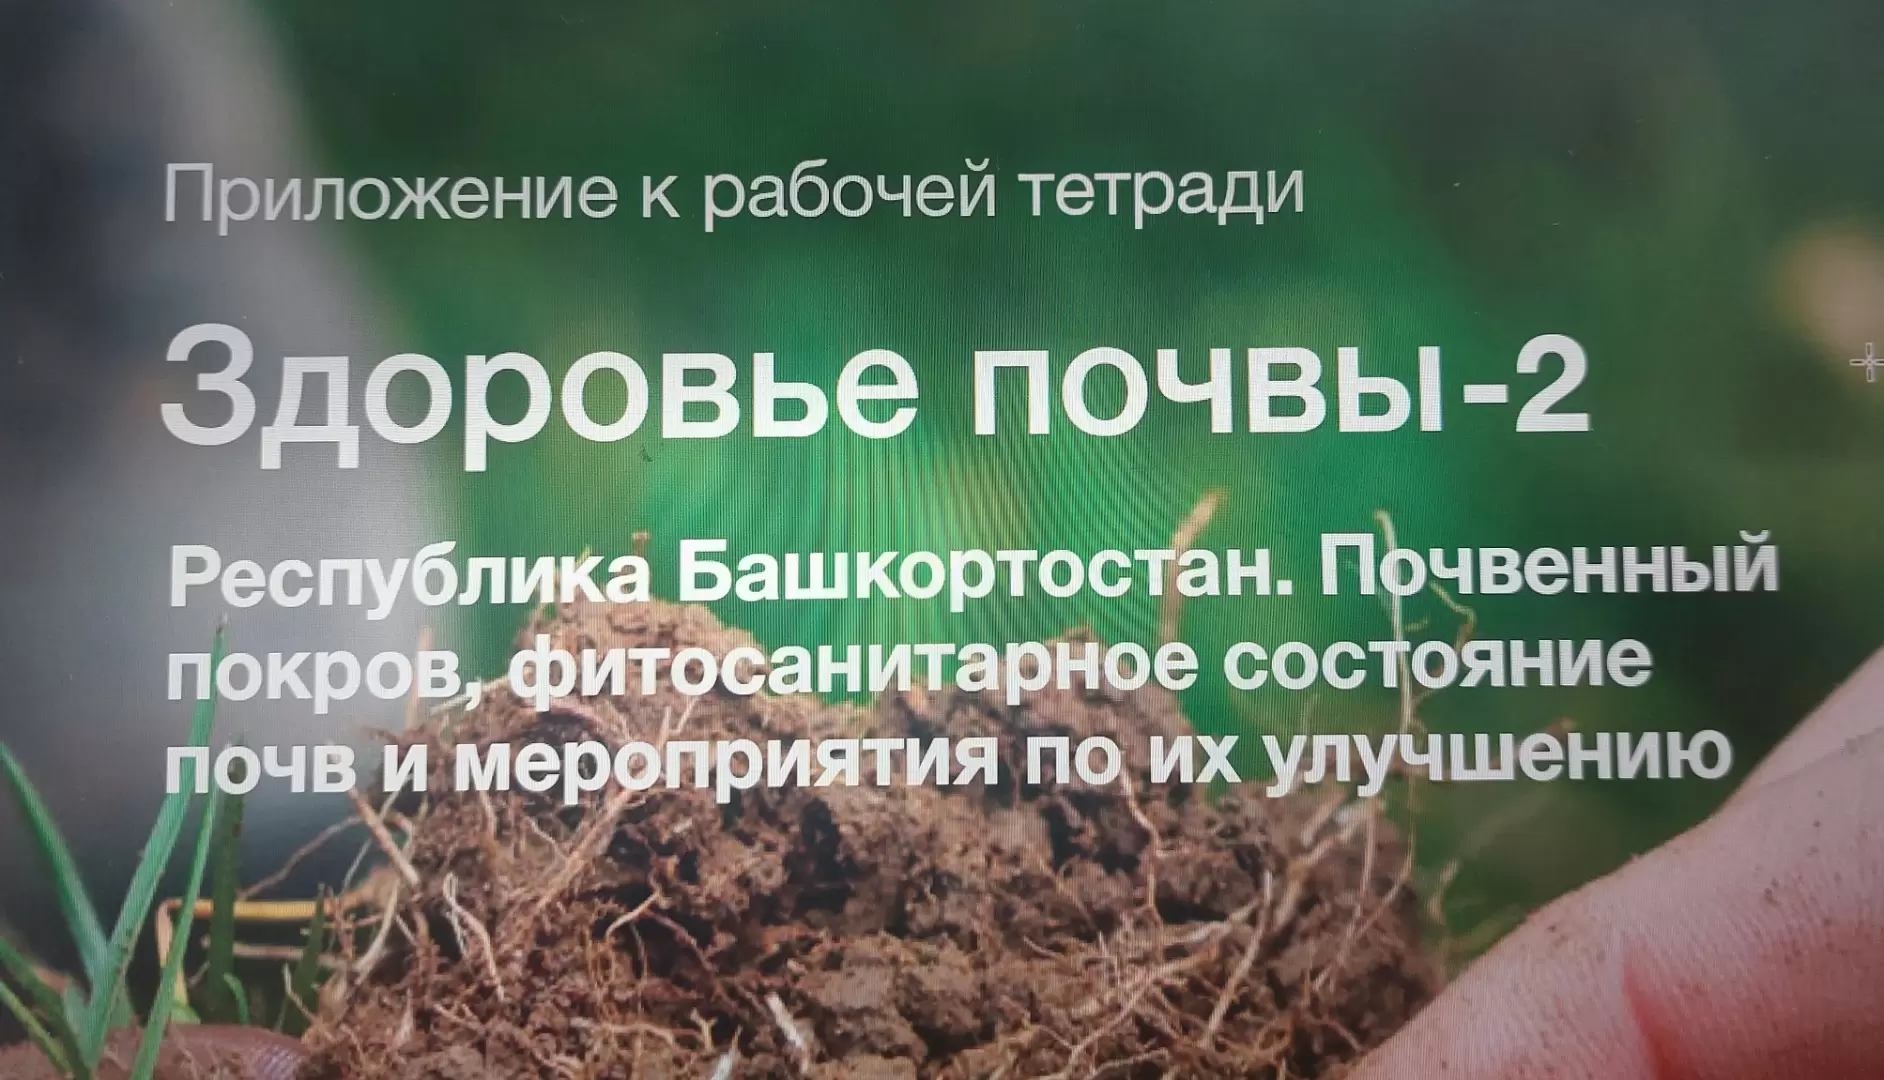 Саратовская область. Здоровье почв и мероприятия по их улучшению